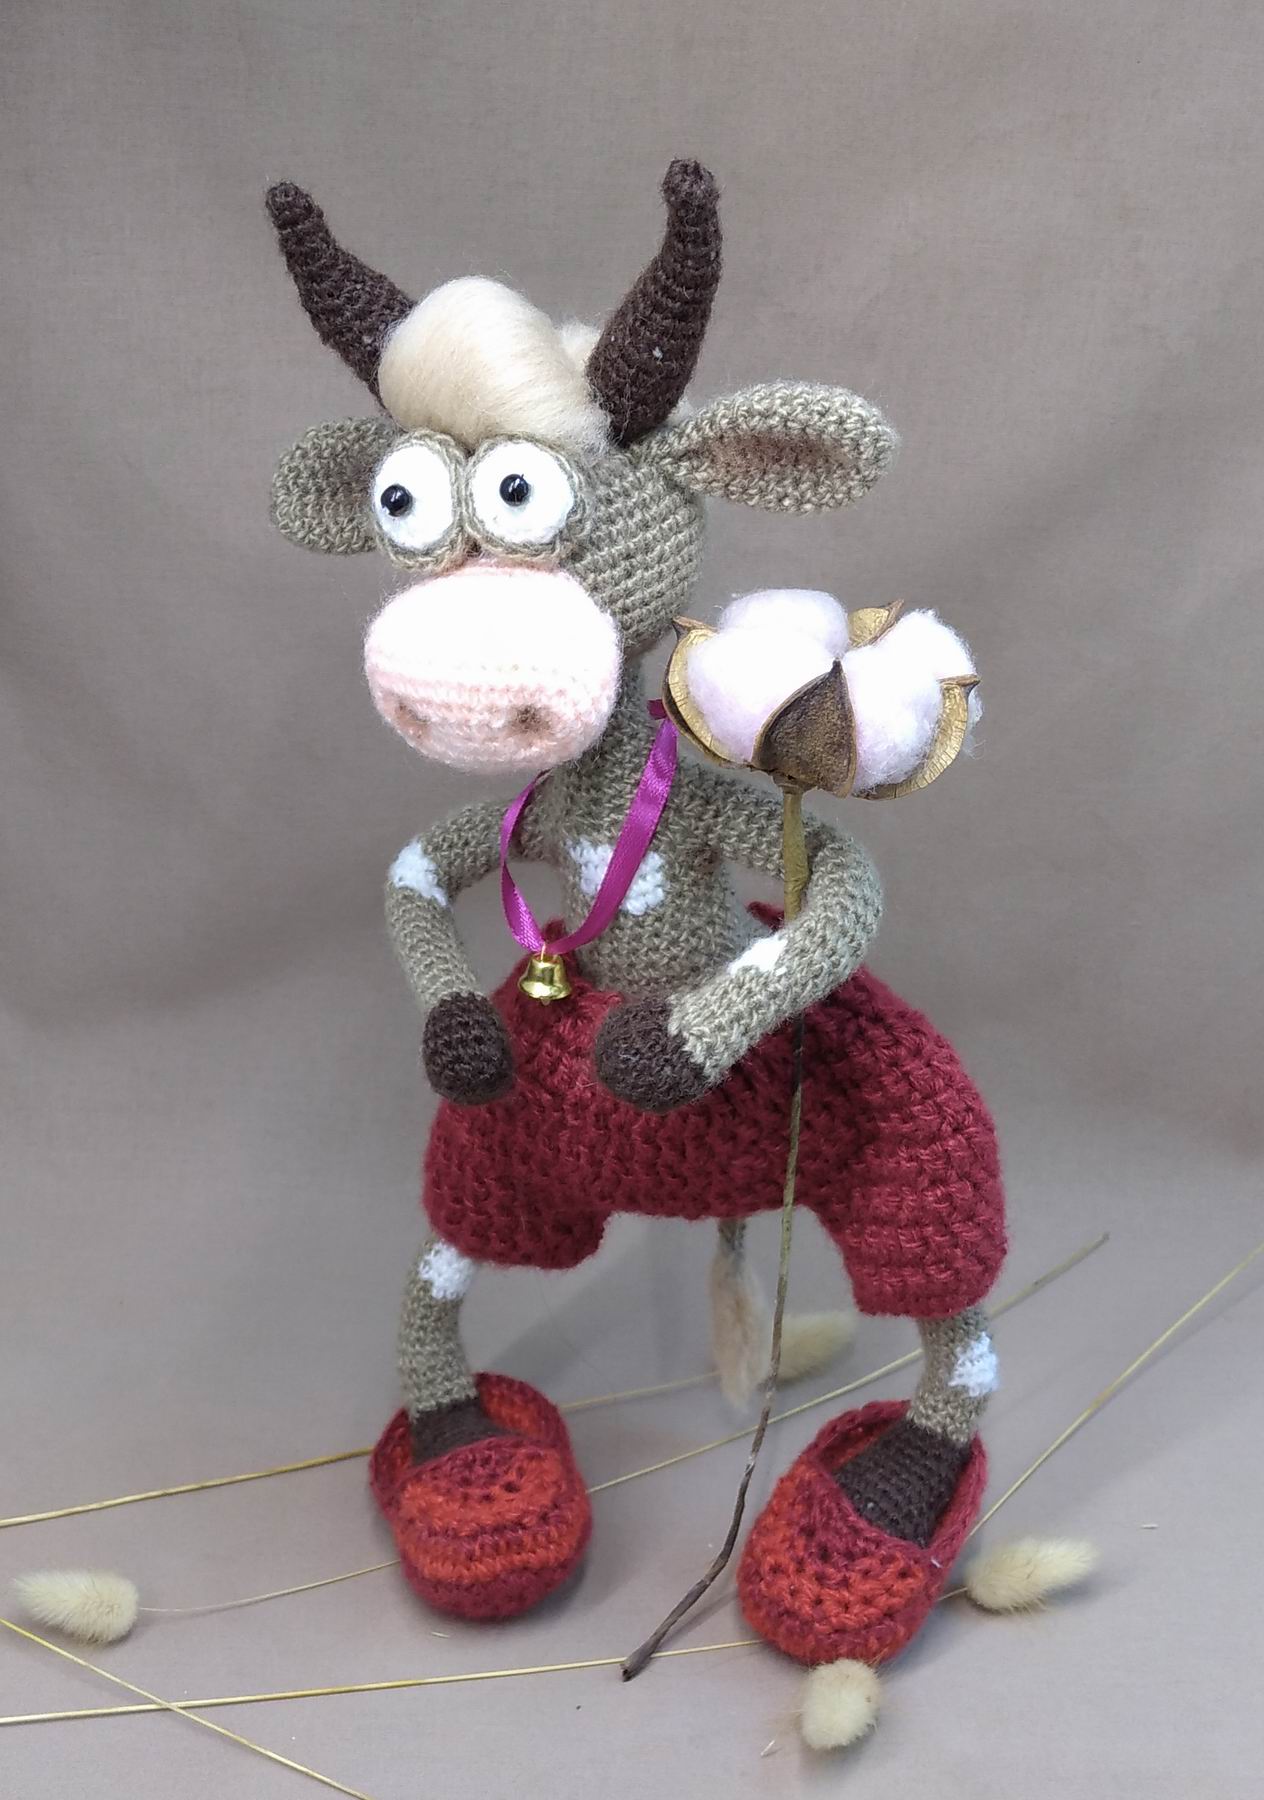 Вязание для детей: игрушки своими руками - корова. Описание и схемы бесплатно